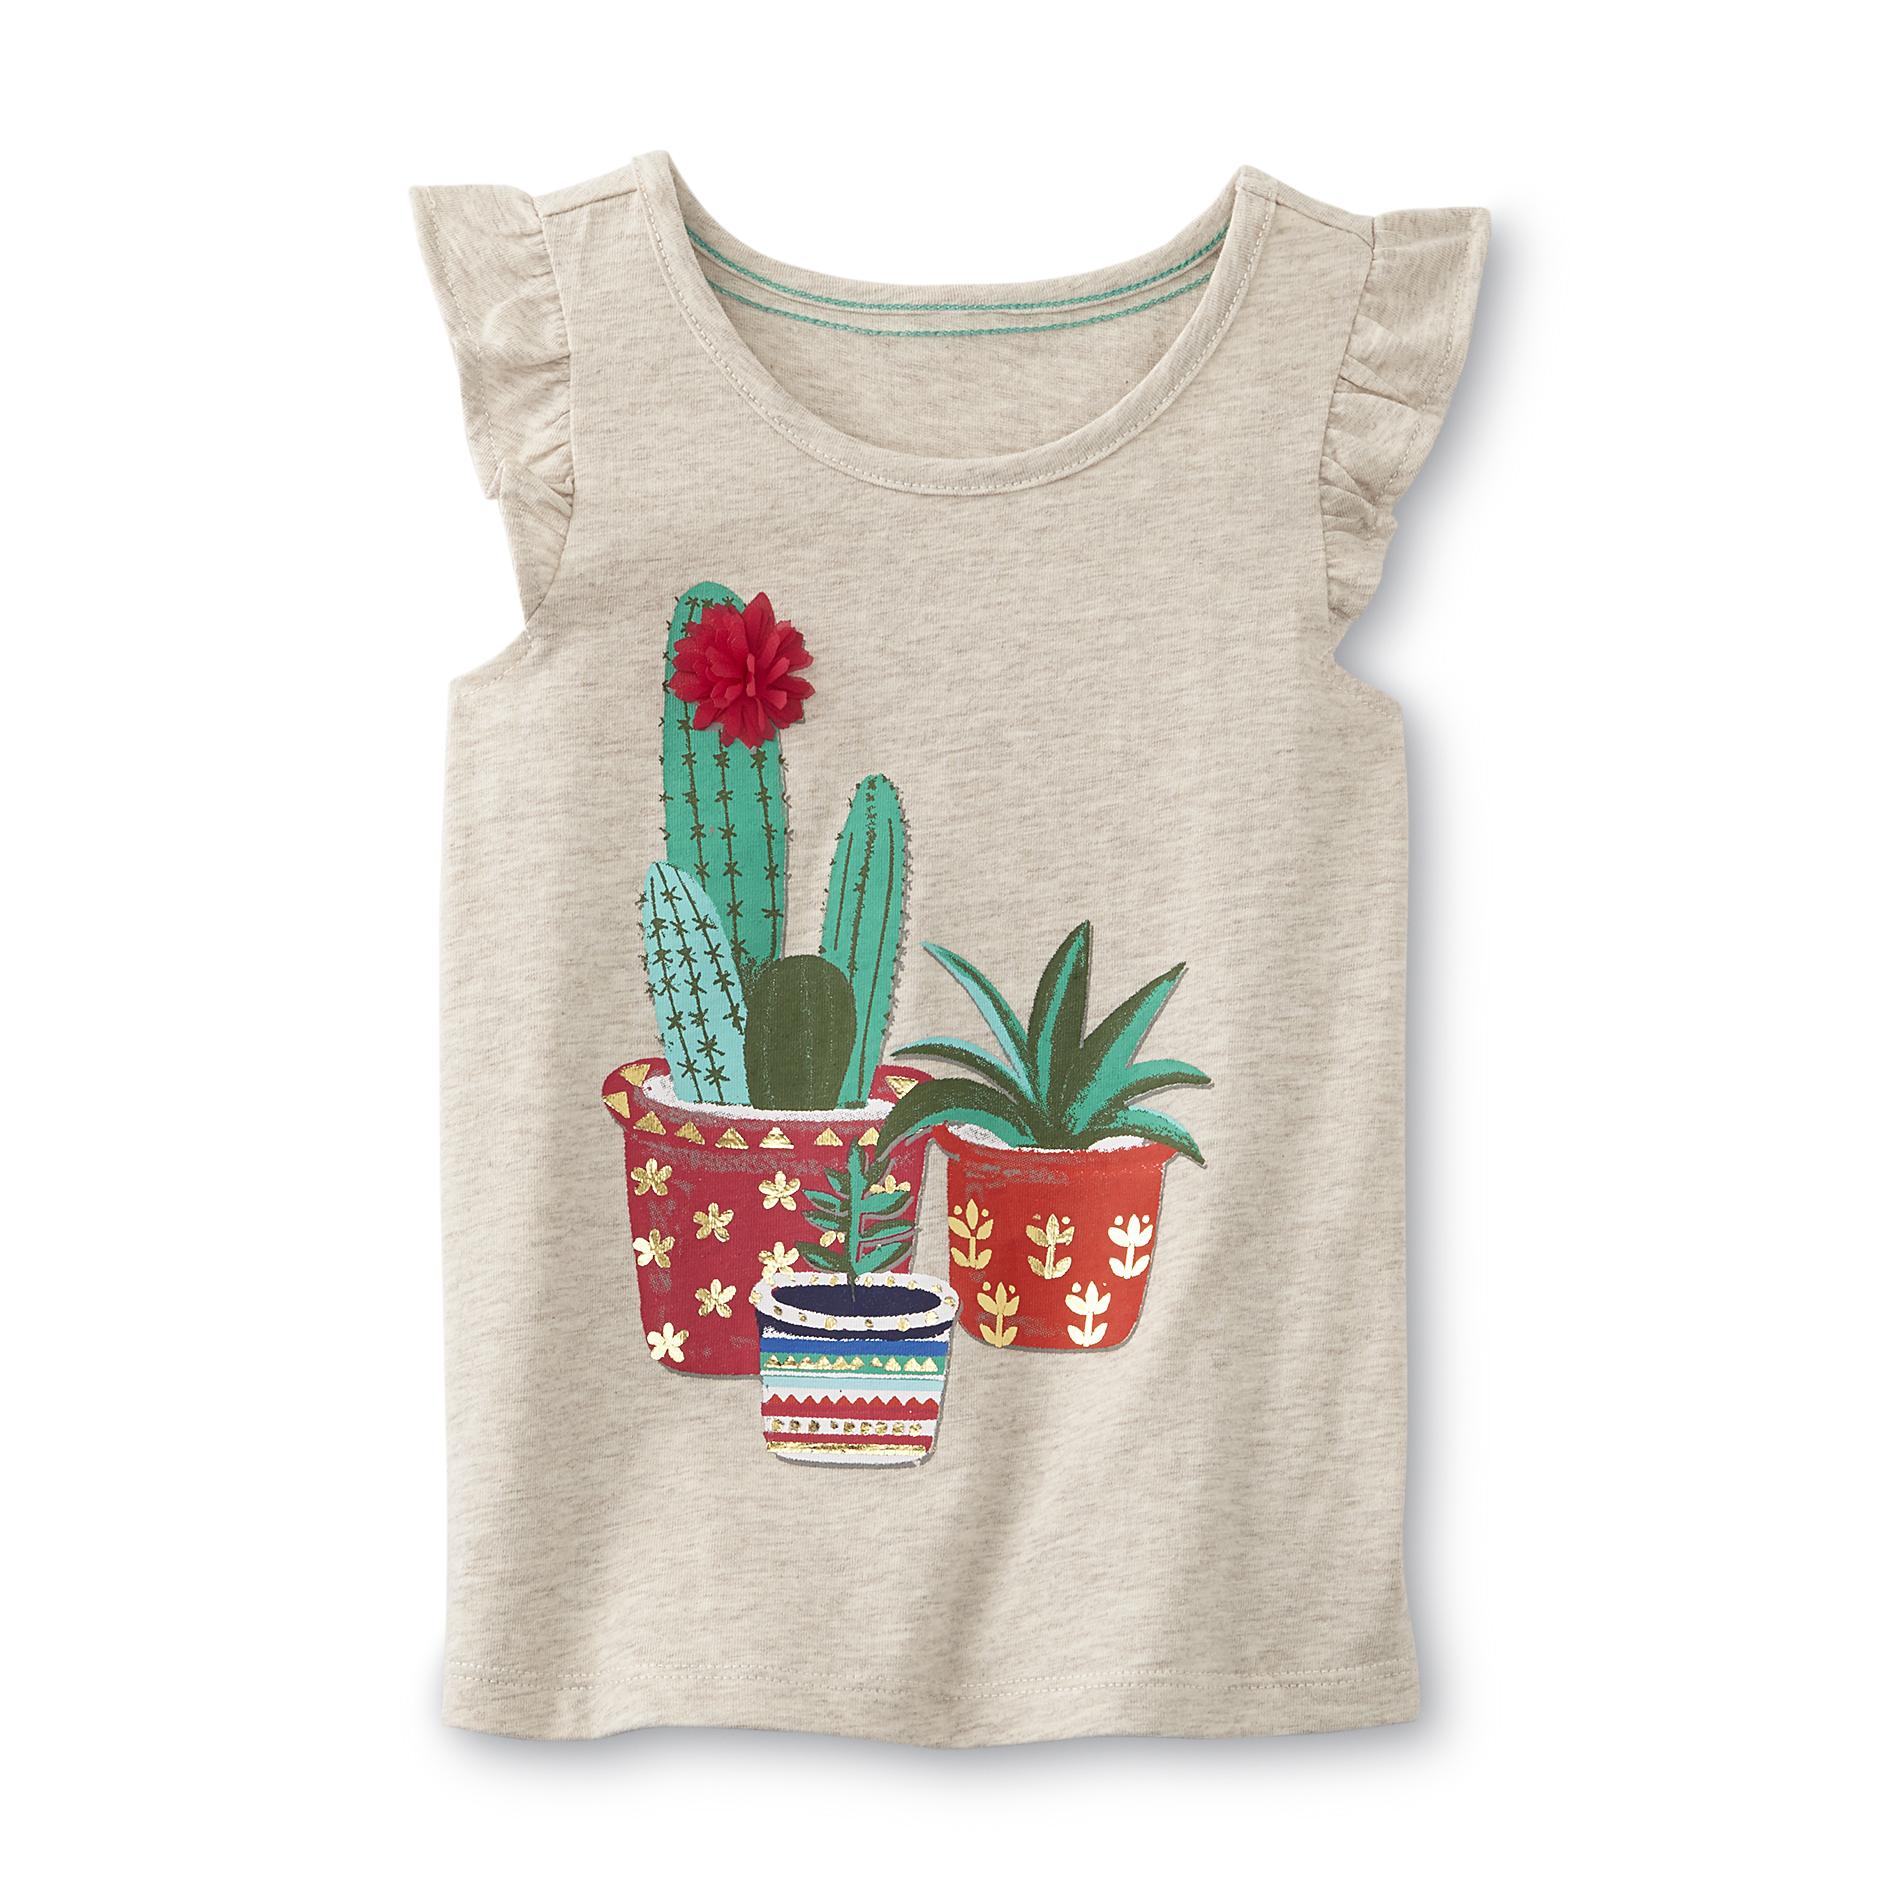 Toughskins Infant & Toddler Girl's Tank Top - Cacti